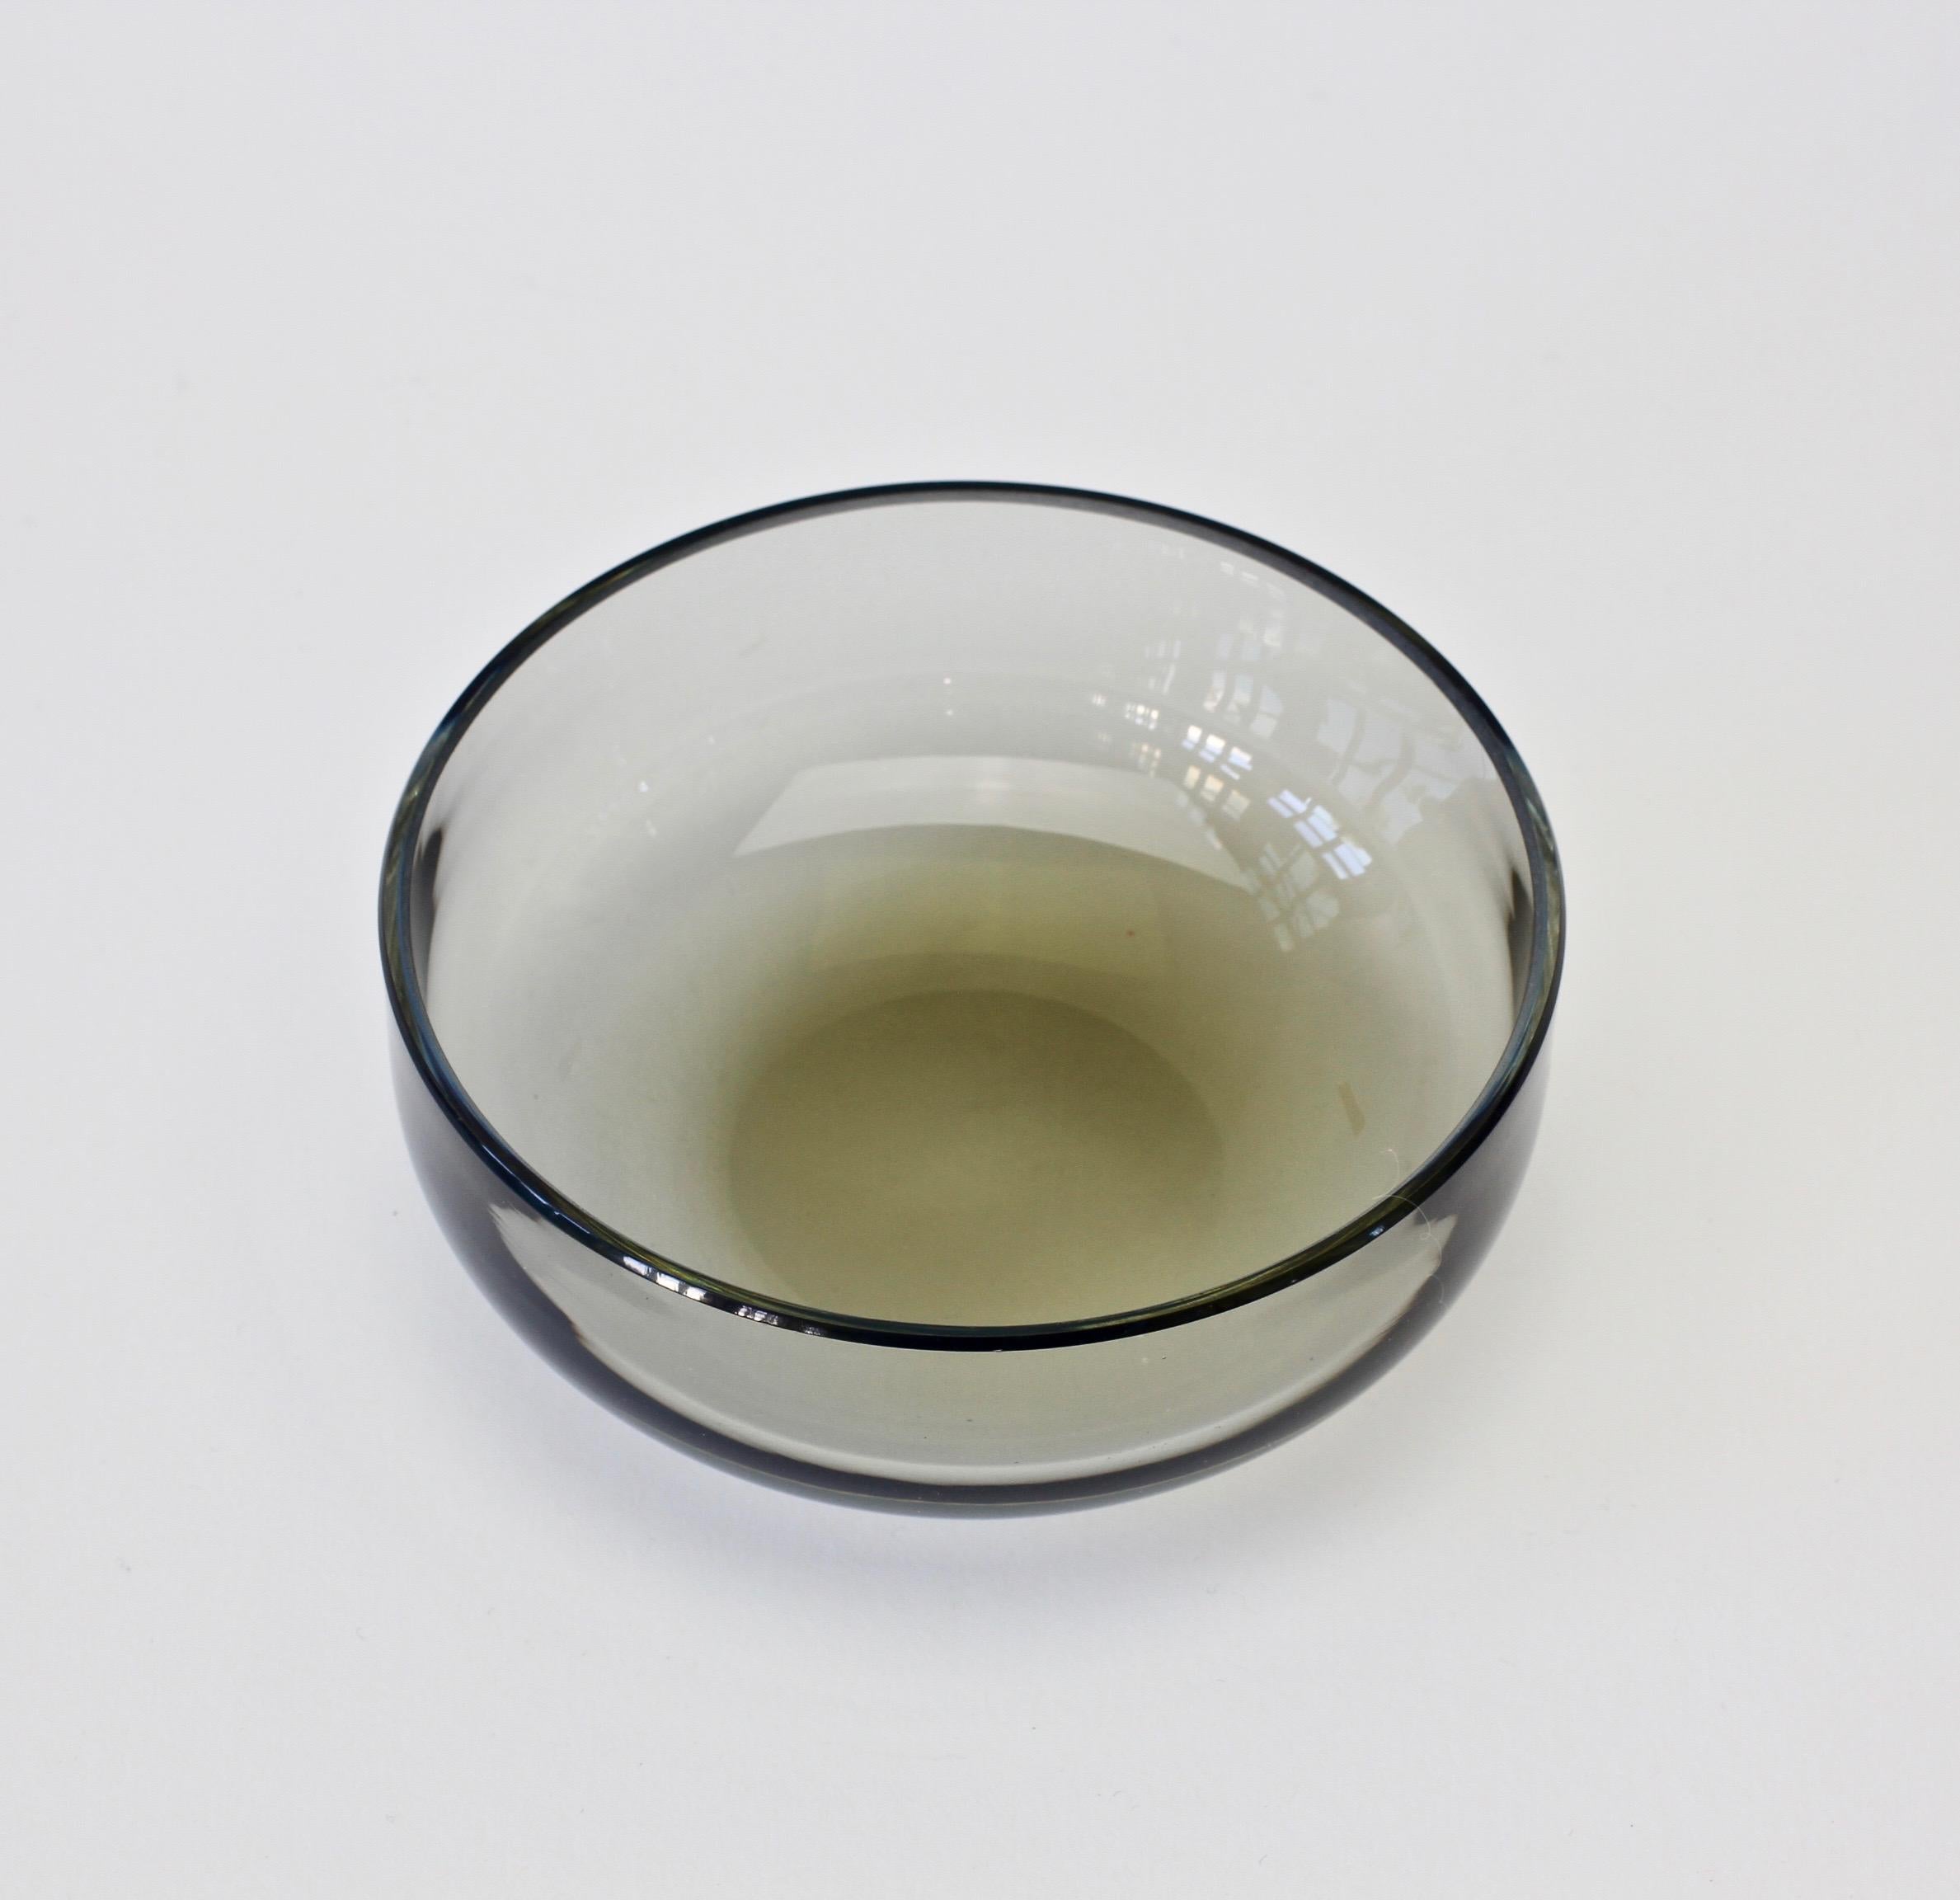 Coupe unique en verre de Murano du milieu du siècle dernier, conçue par Antonio da Ros (1936-2012) pour Cenedese, vers 1970-1990. Merveilleuse couleur translucide du verre de tonalité gris fumé (gris). Une forme à la fois simple et élégante, presque